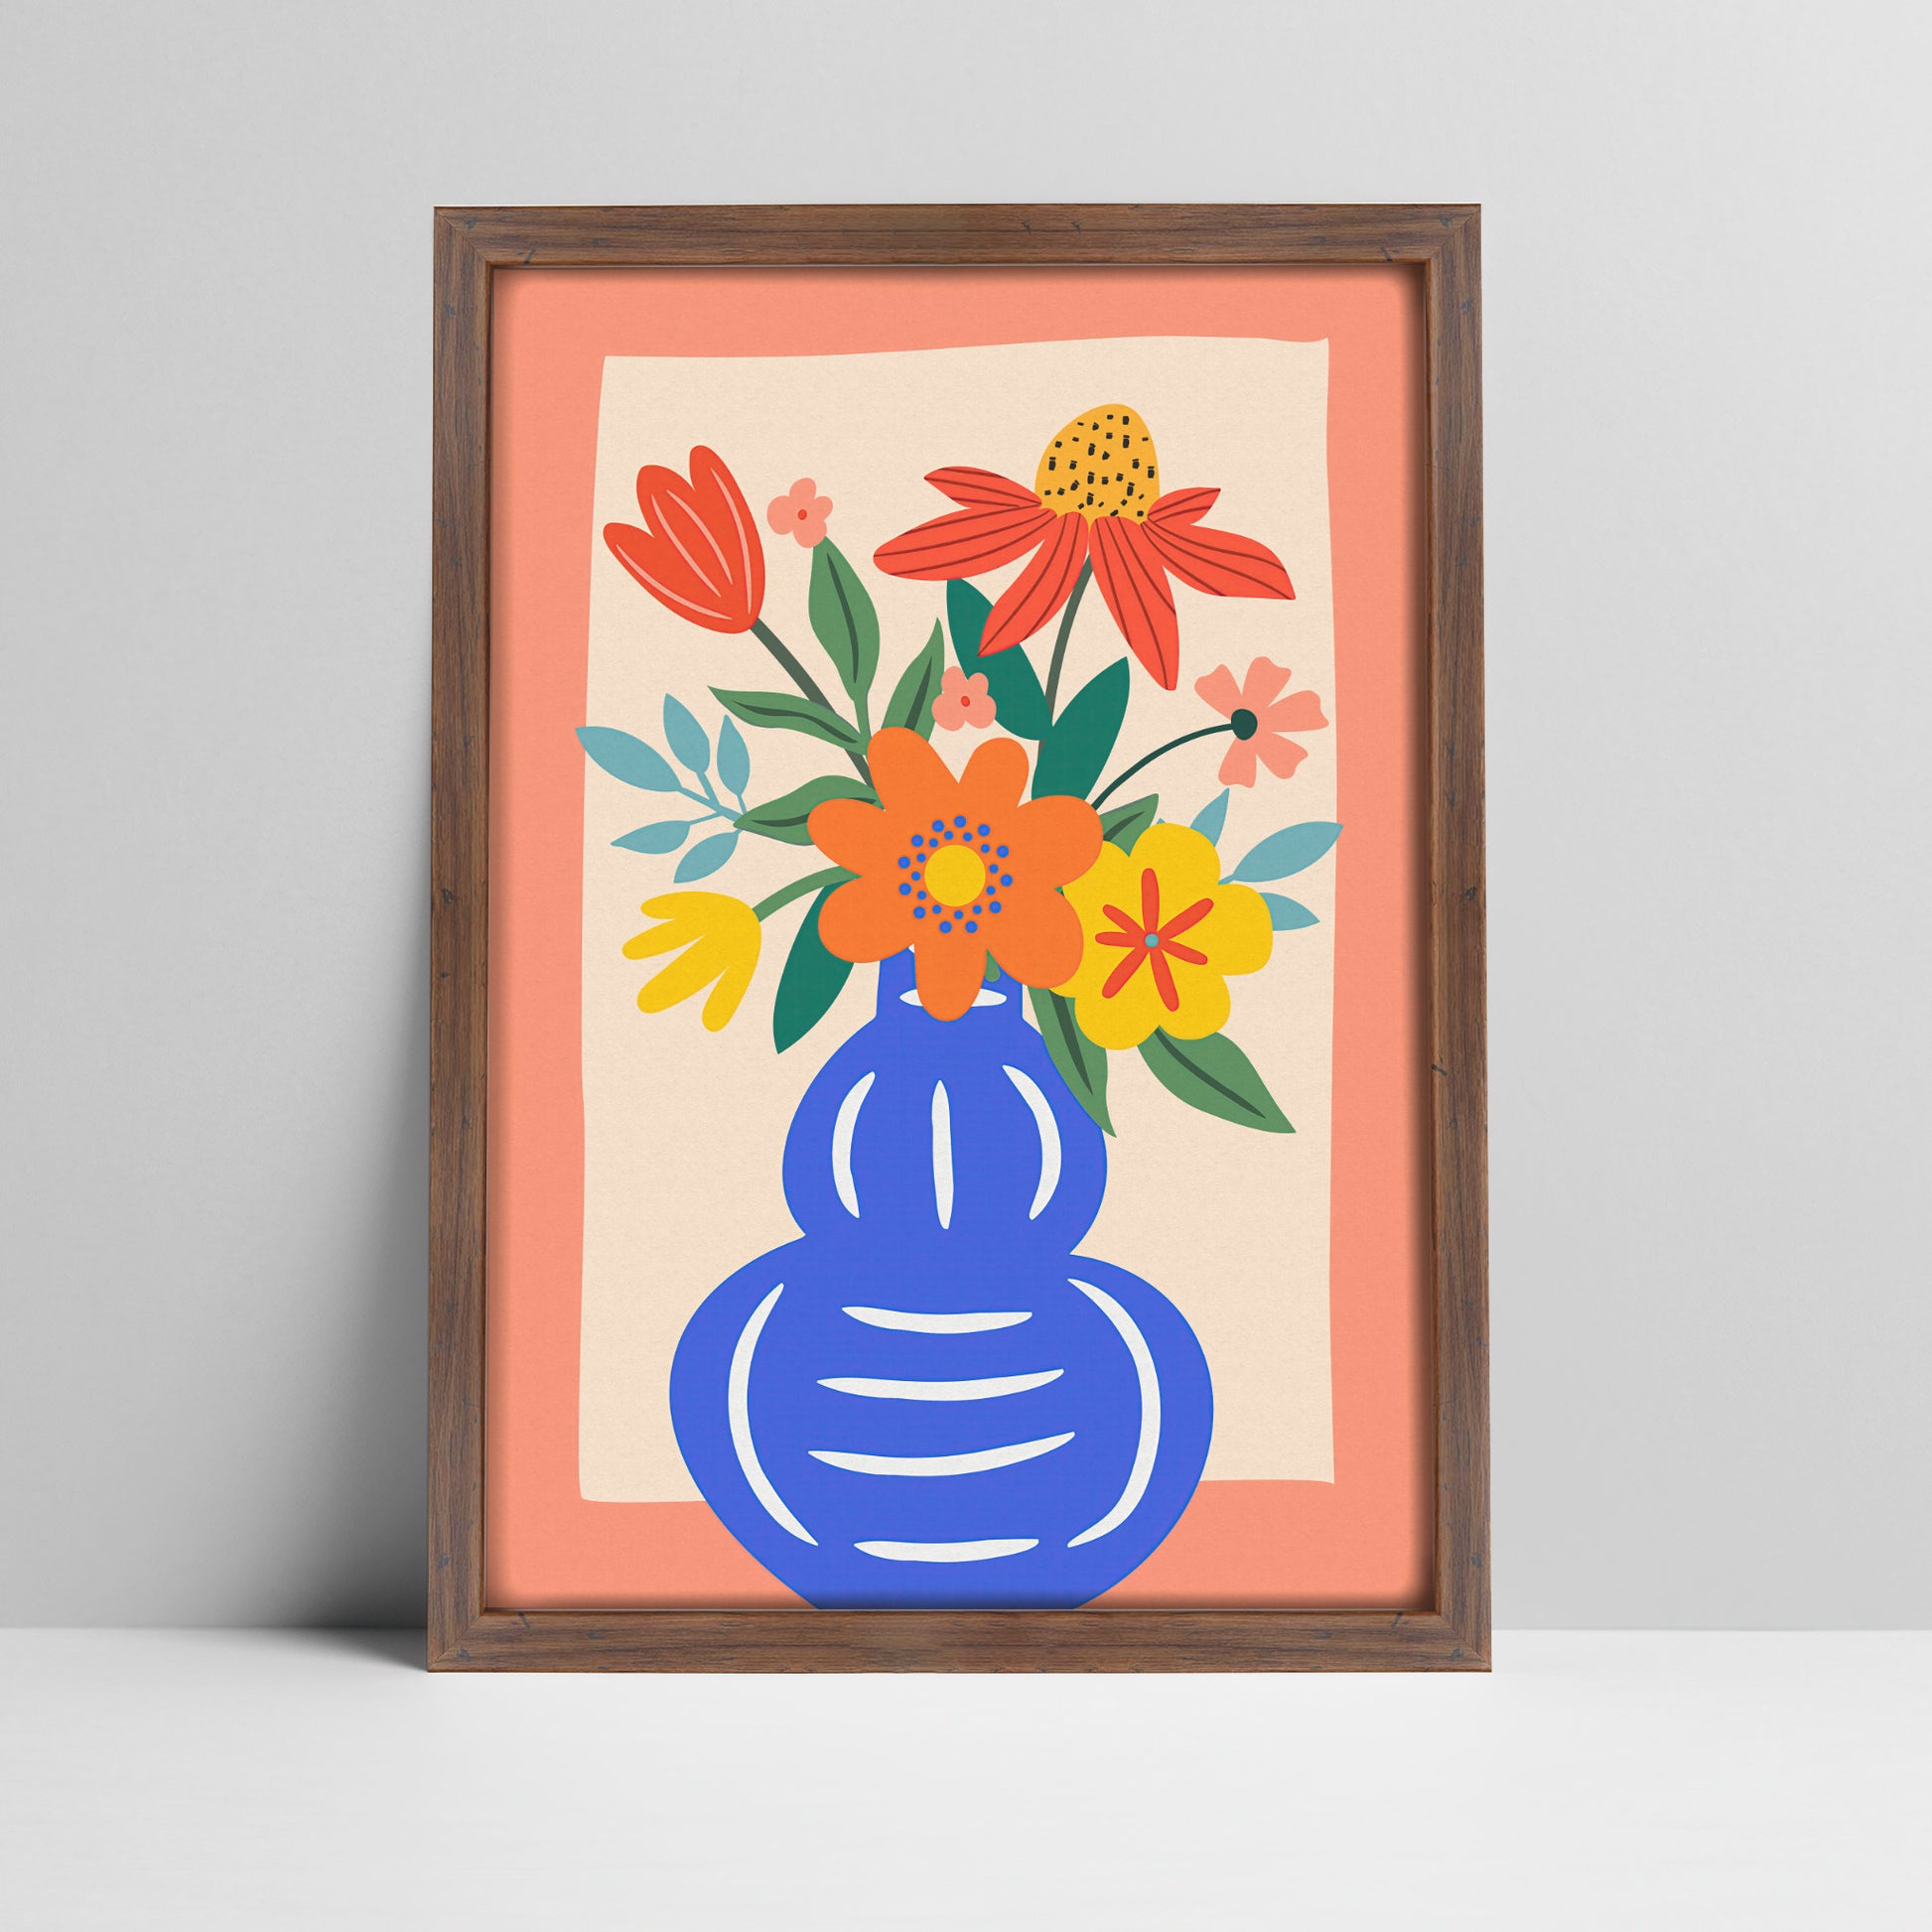 Floral bouquet in blue vase illustration in a 20 mm dark wood frame